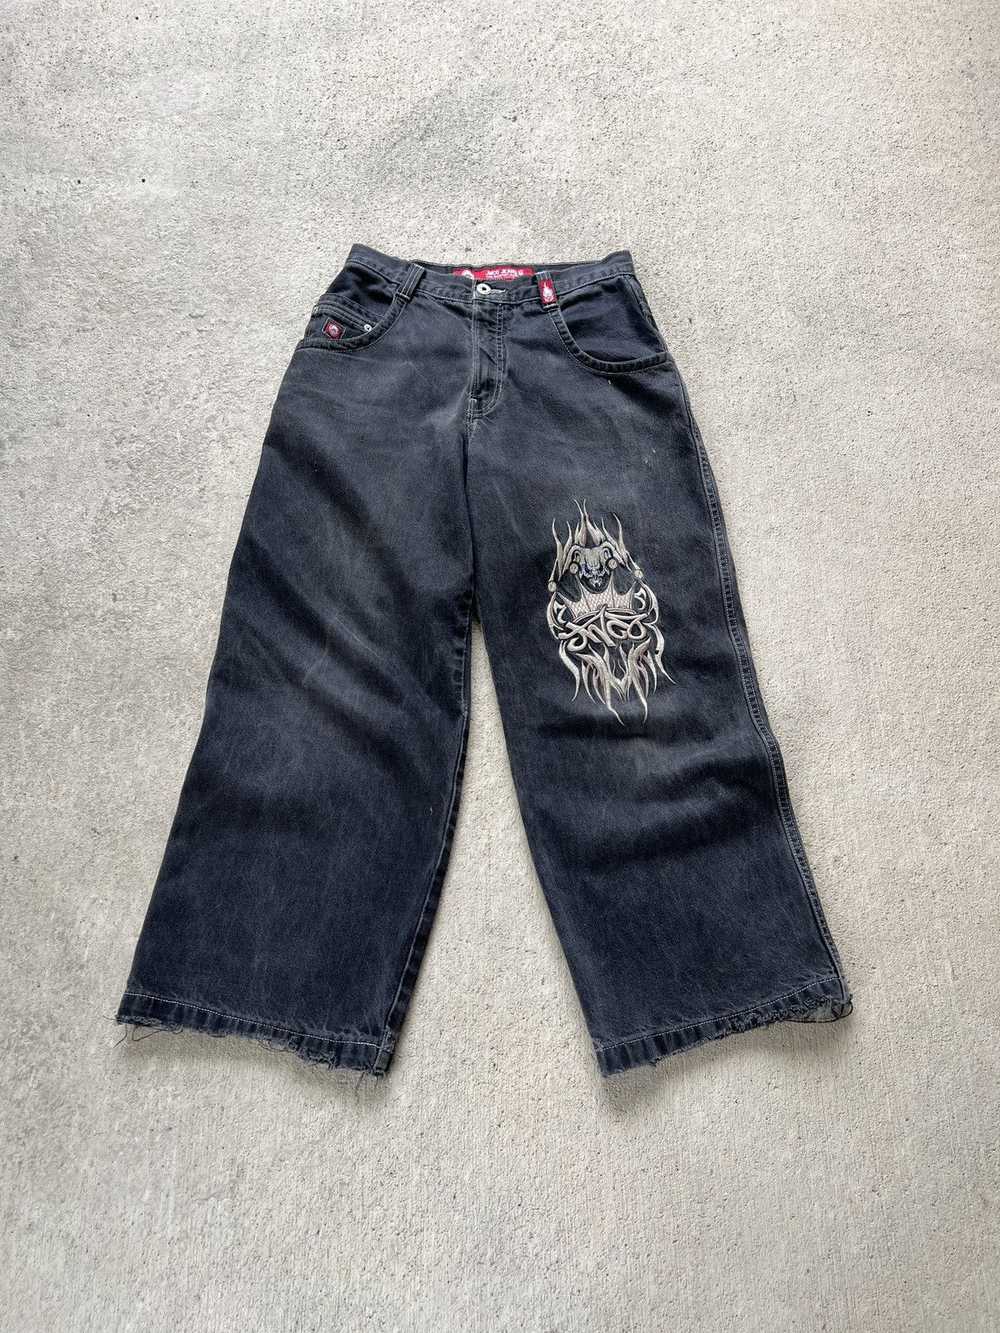 Jnco × Streetwear × Vintage Vintage Jnco Jeans Sn… - image 1